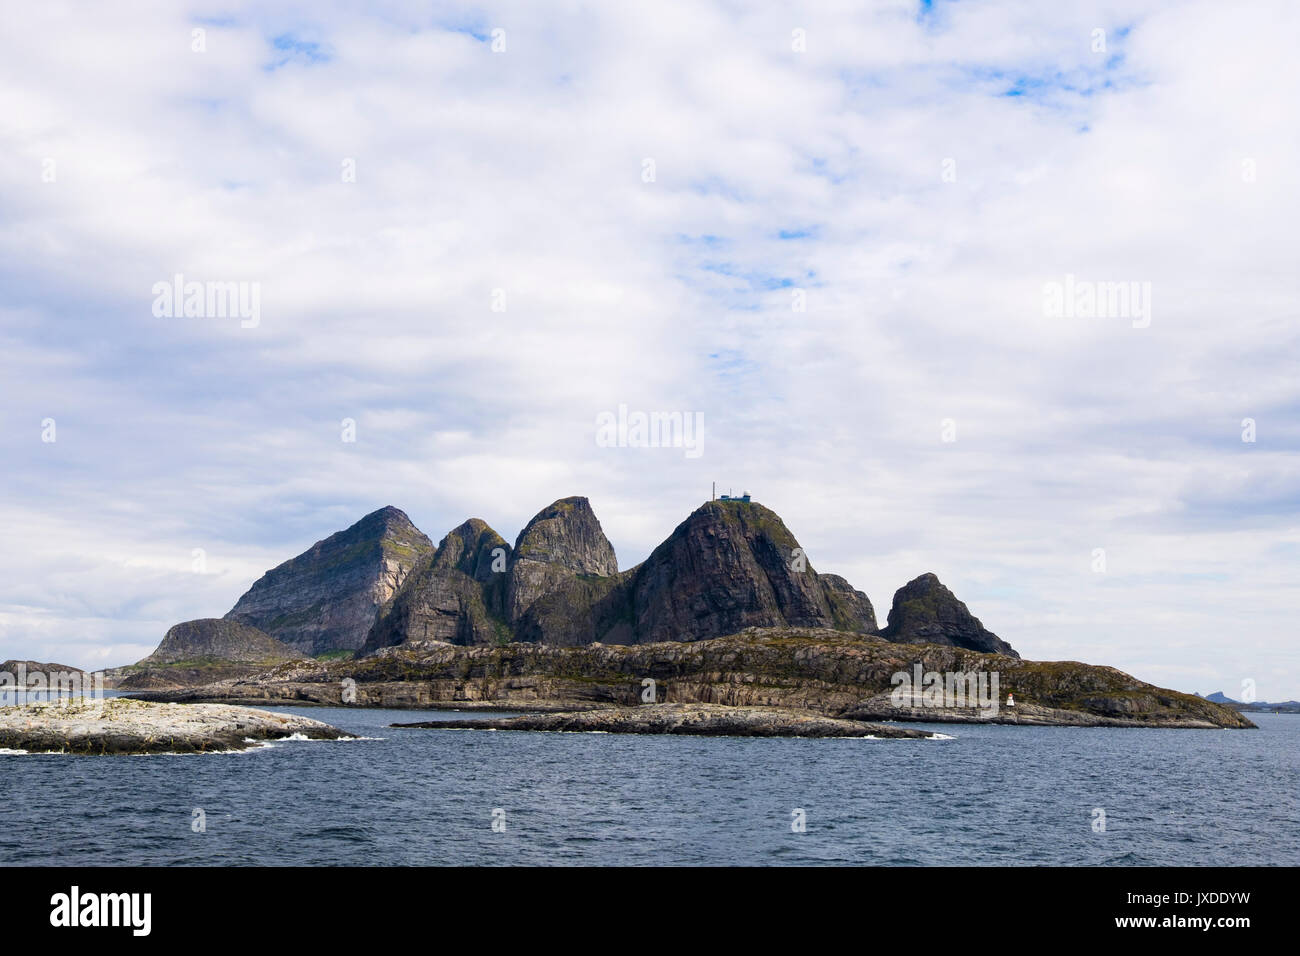 Vue de mer et littoral rocheux les cinq montagnes de l'île, l'archipel de Traena Sanna, comté de Nordland, Norvège, Scandinavie Banque D'Images